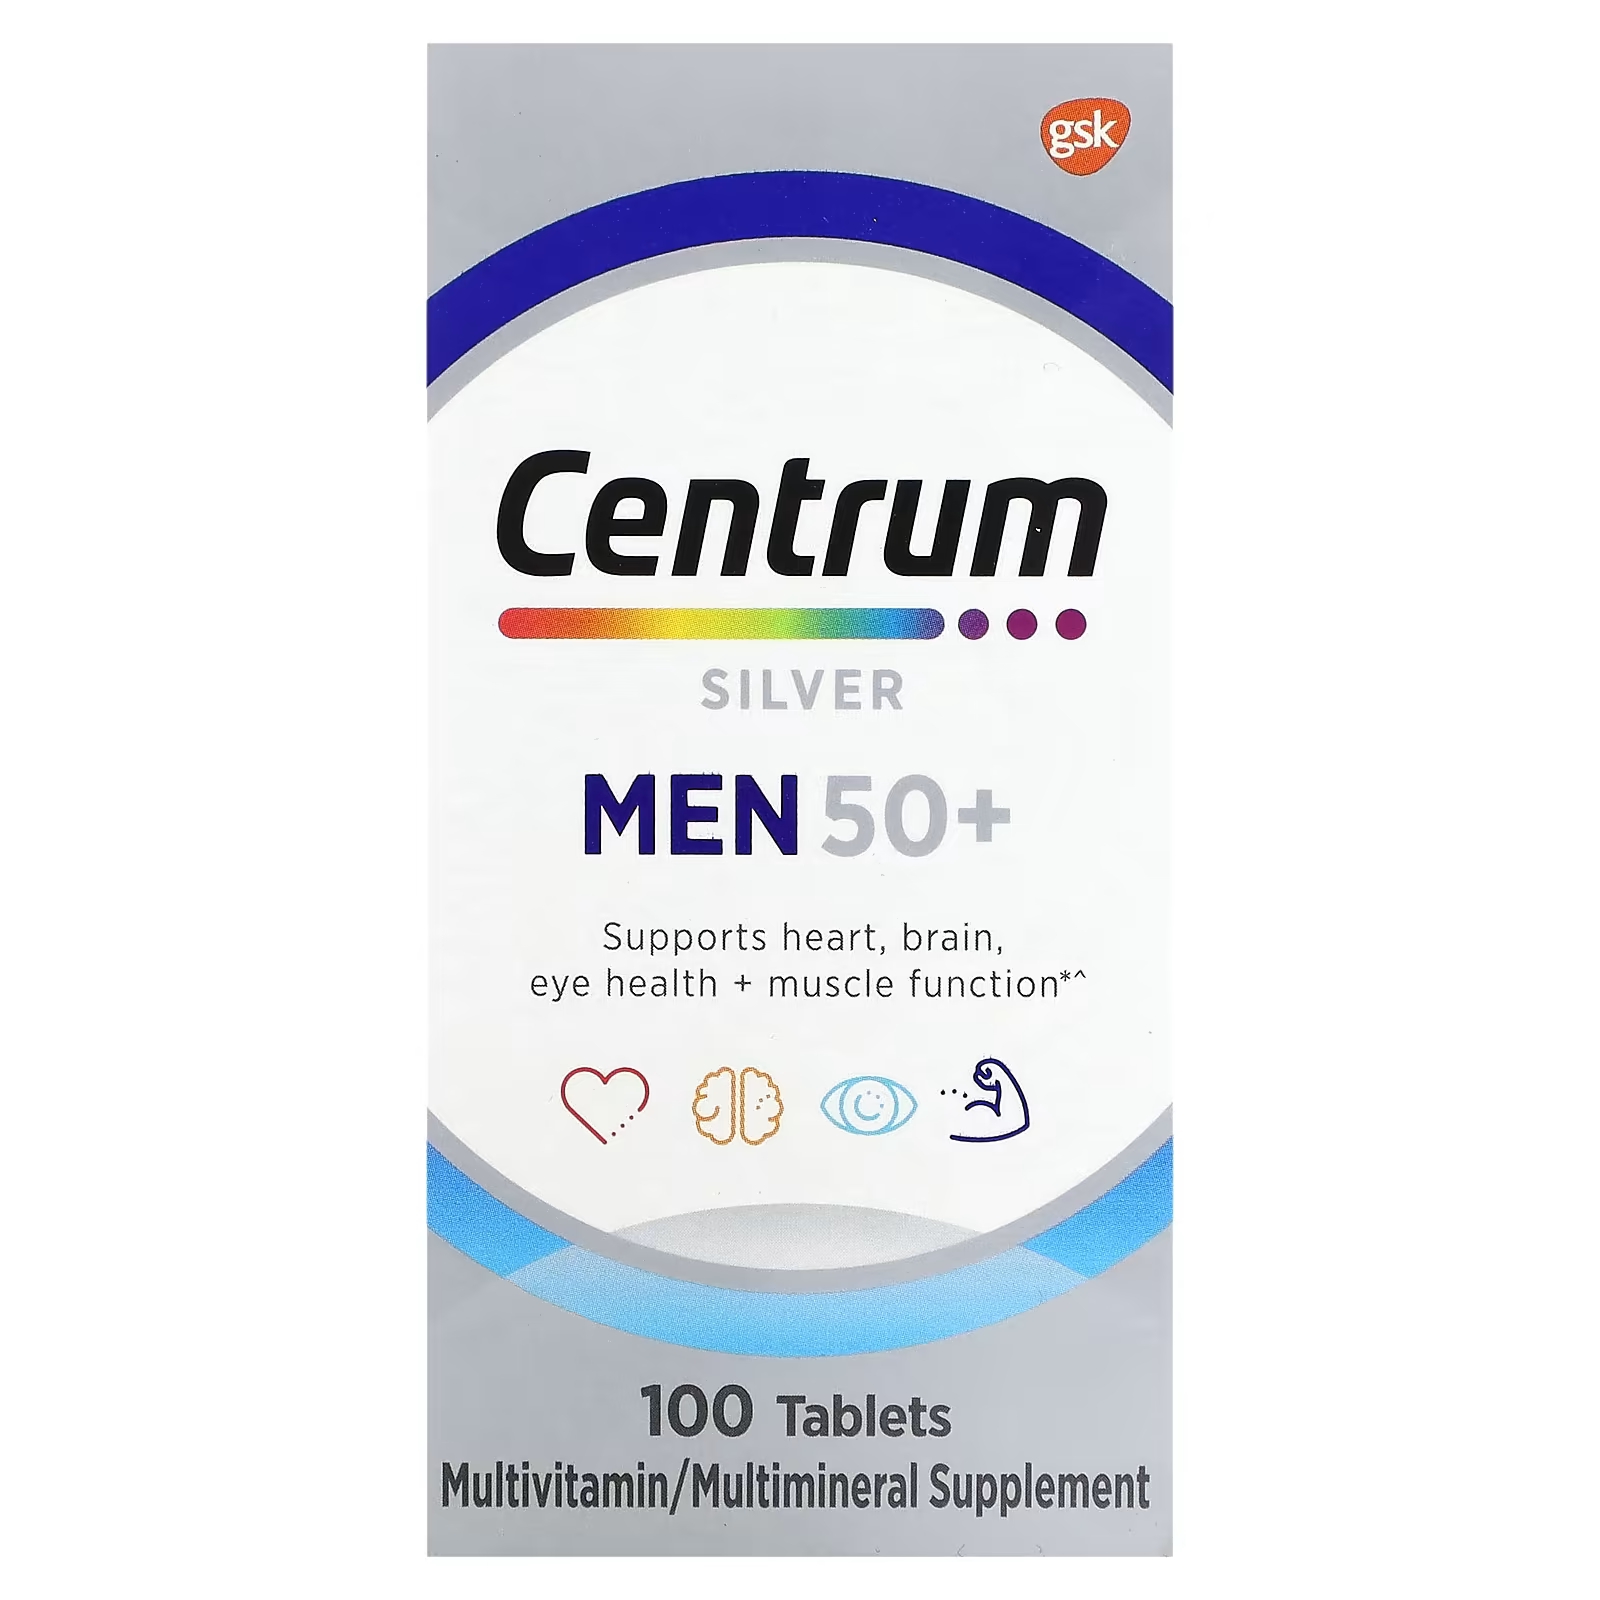 Мультивитаминная добавка Centrum Silver для мужчин 50+, 100 таблеток centrum серебряные таблетки для мужчин старше 50 лет 100 таблеток